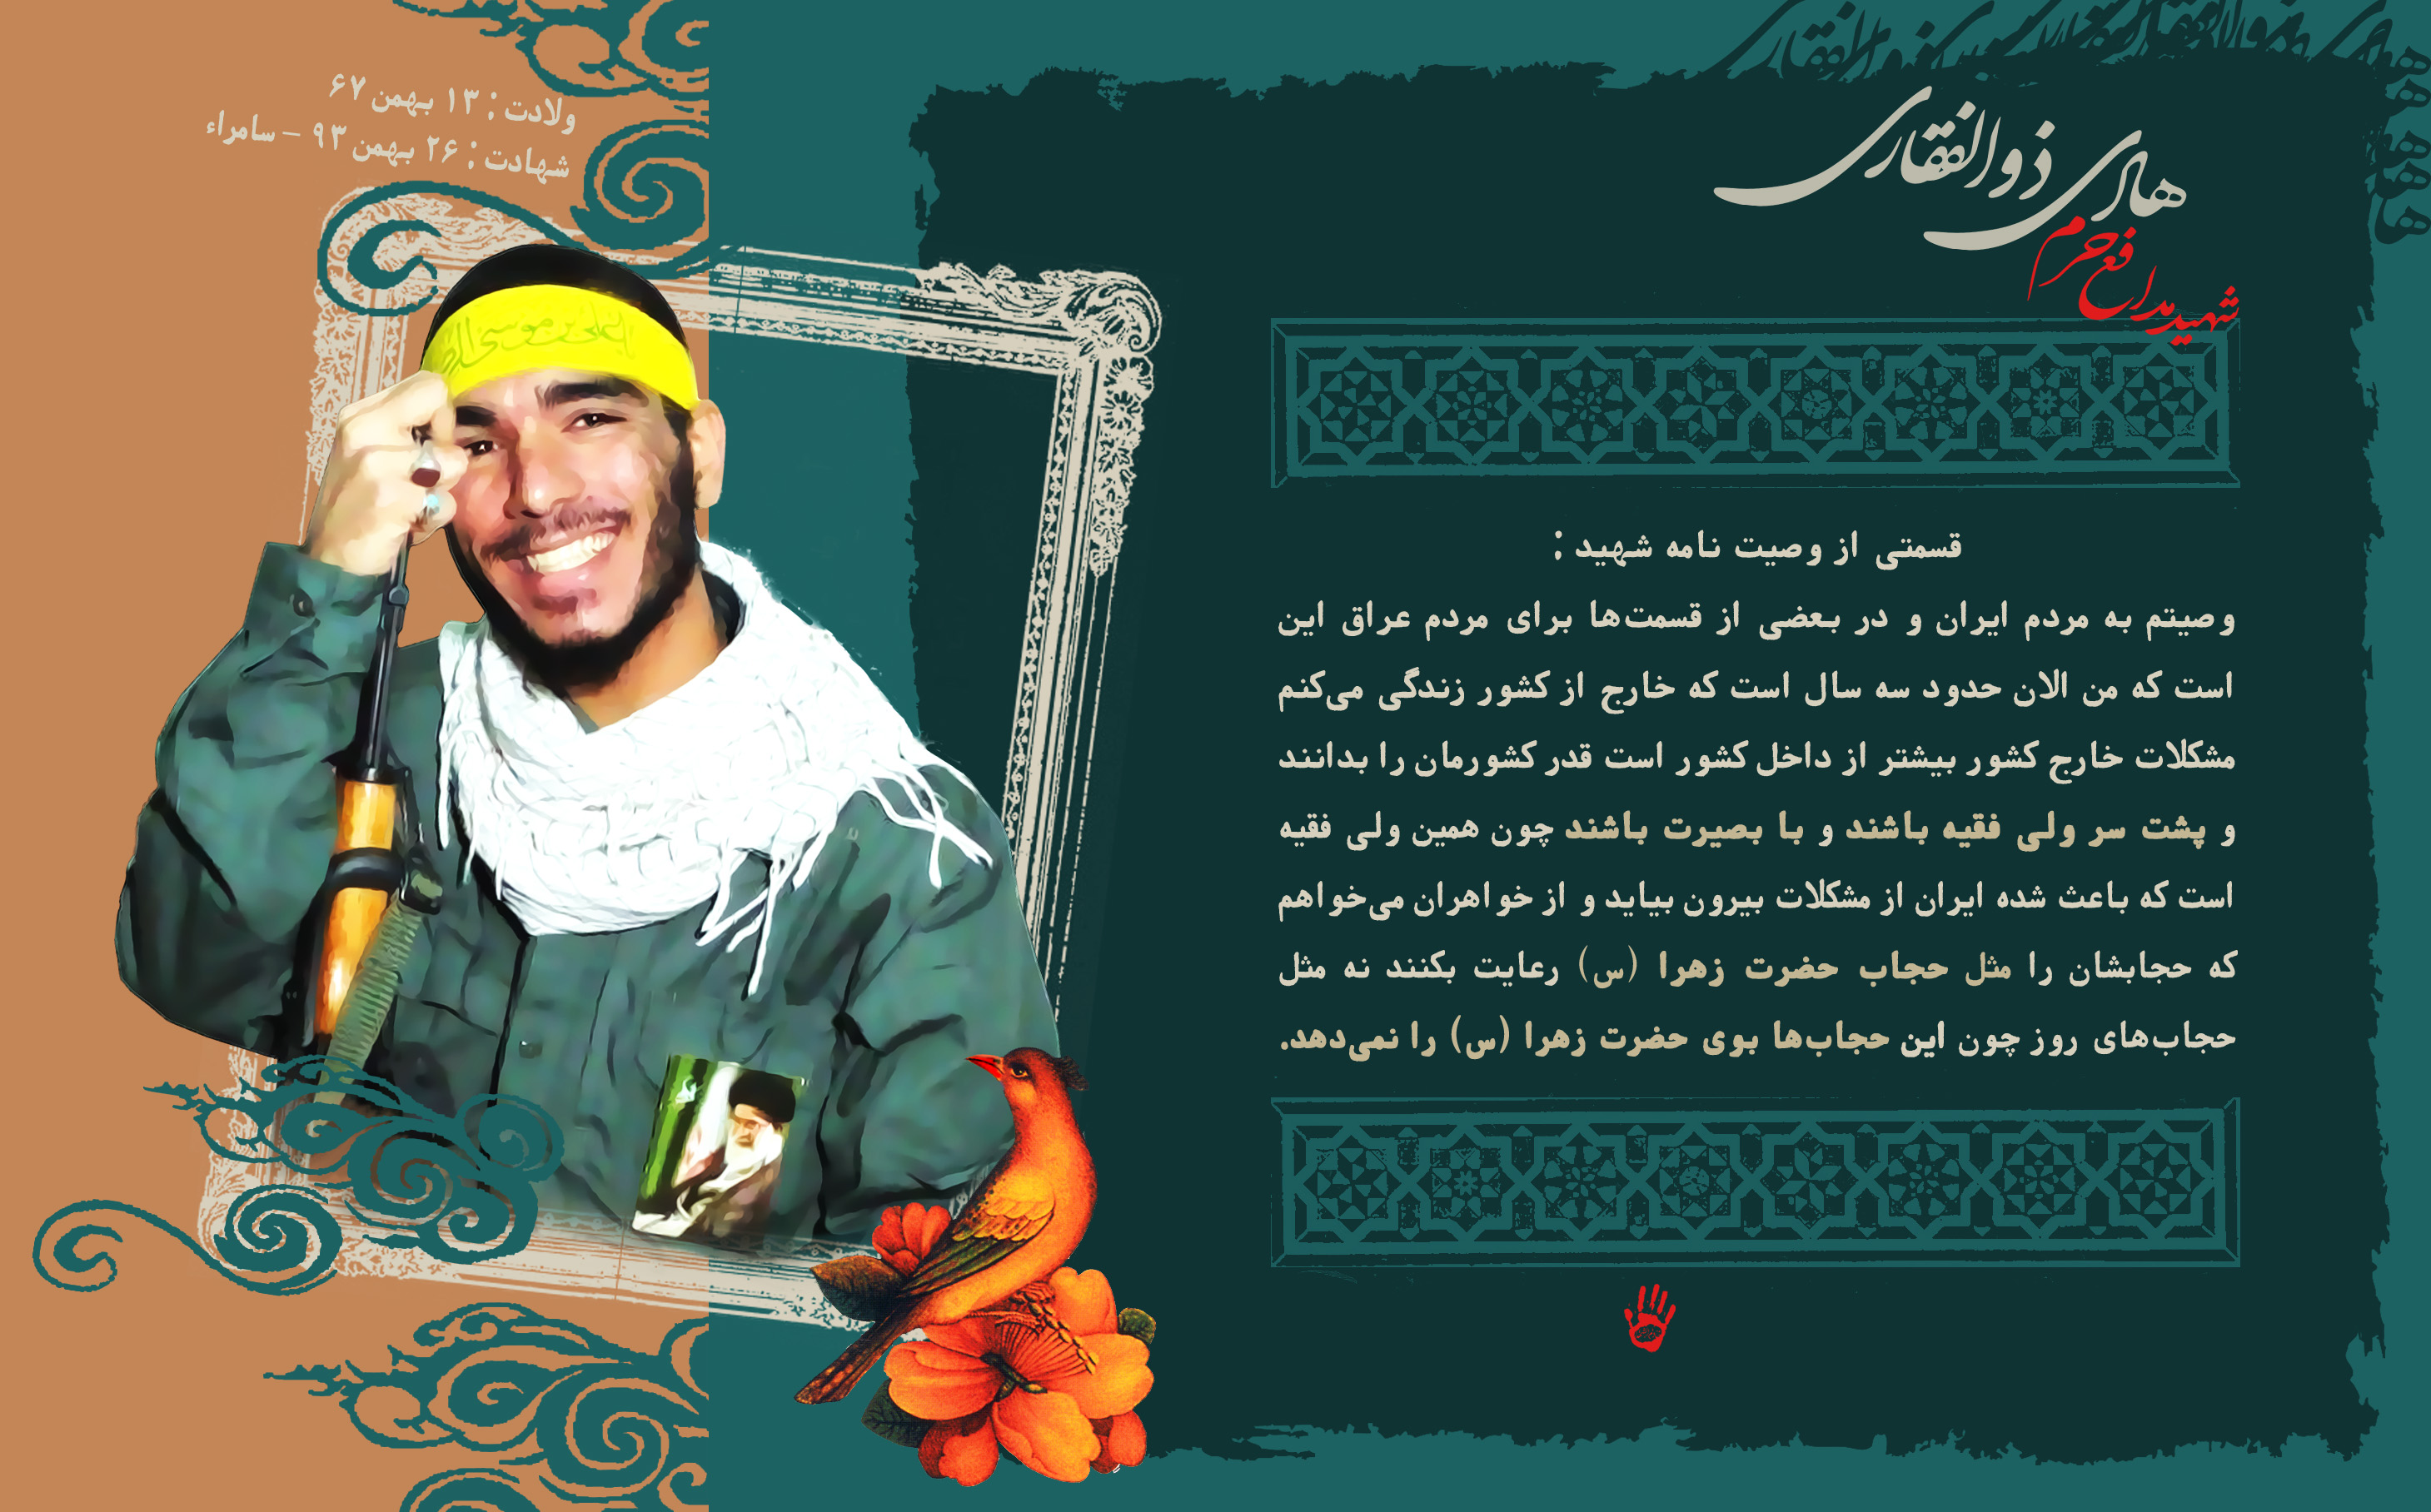 پوستر و وصیت نامه شهدای مدافع حرم / شهید محمد هادی ذوالفقاری